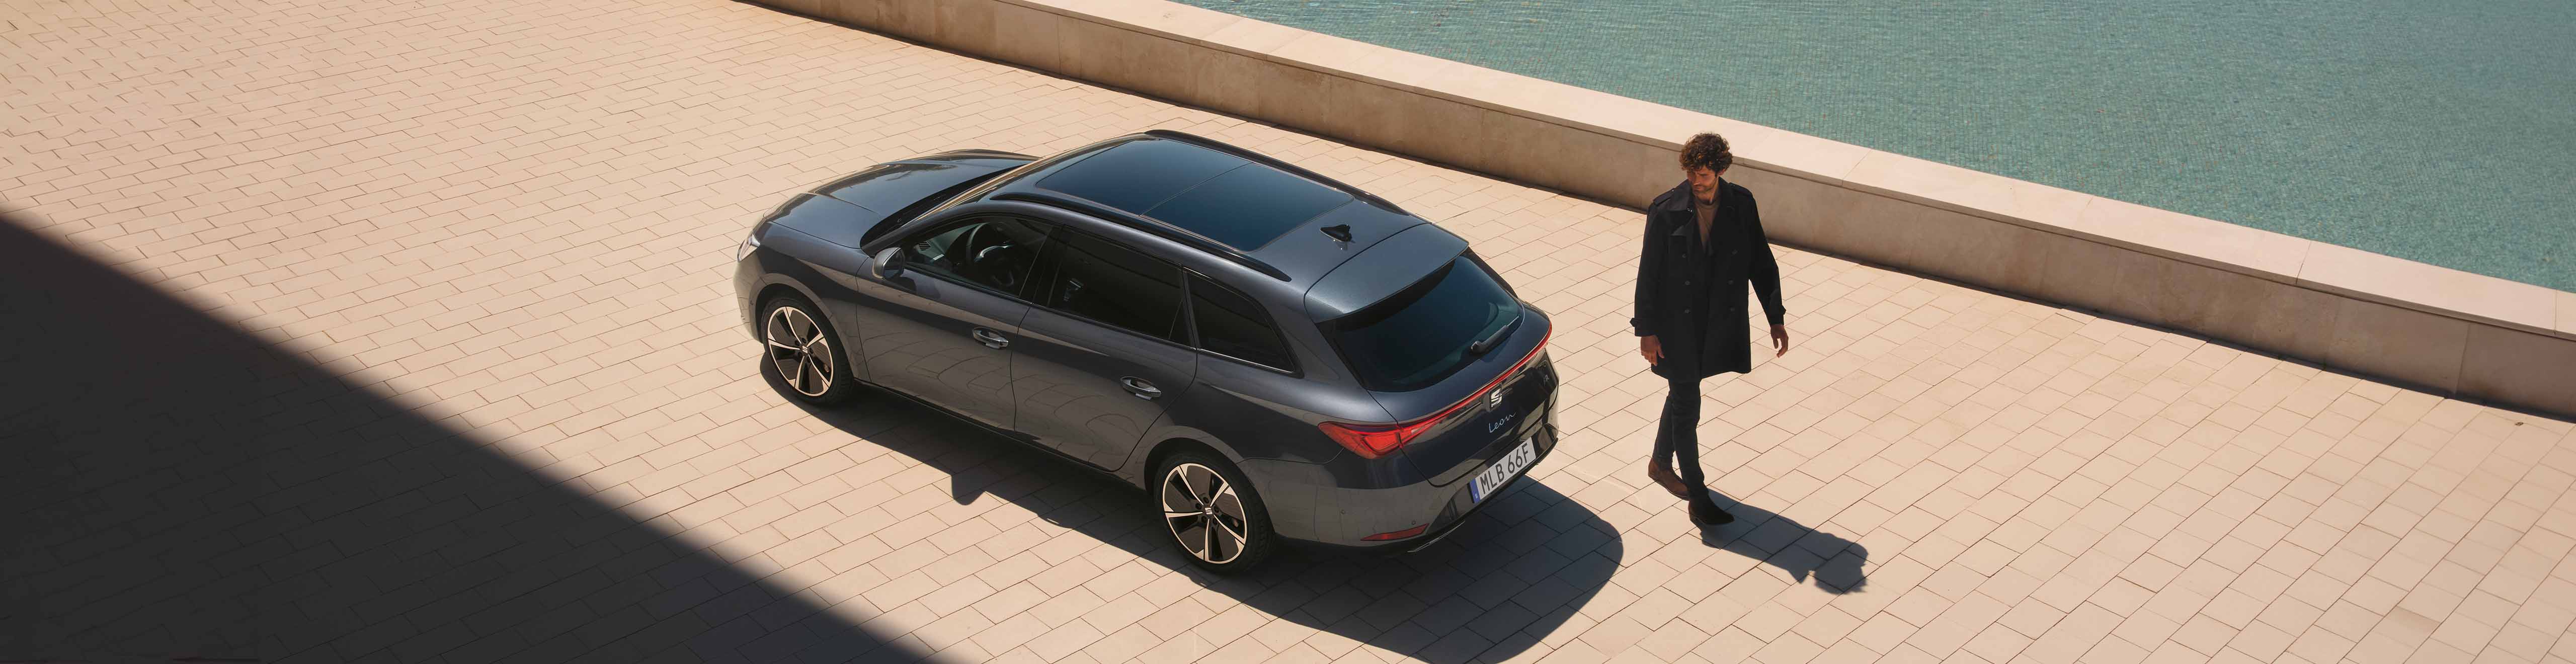 Nya SEAT Tarraco SUV 2021 sedd snett bakifrån på parkering